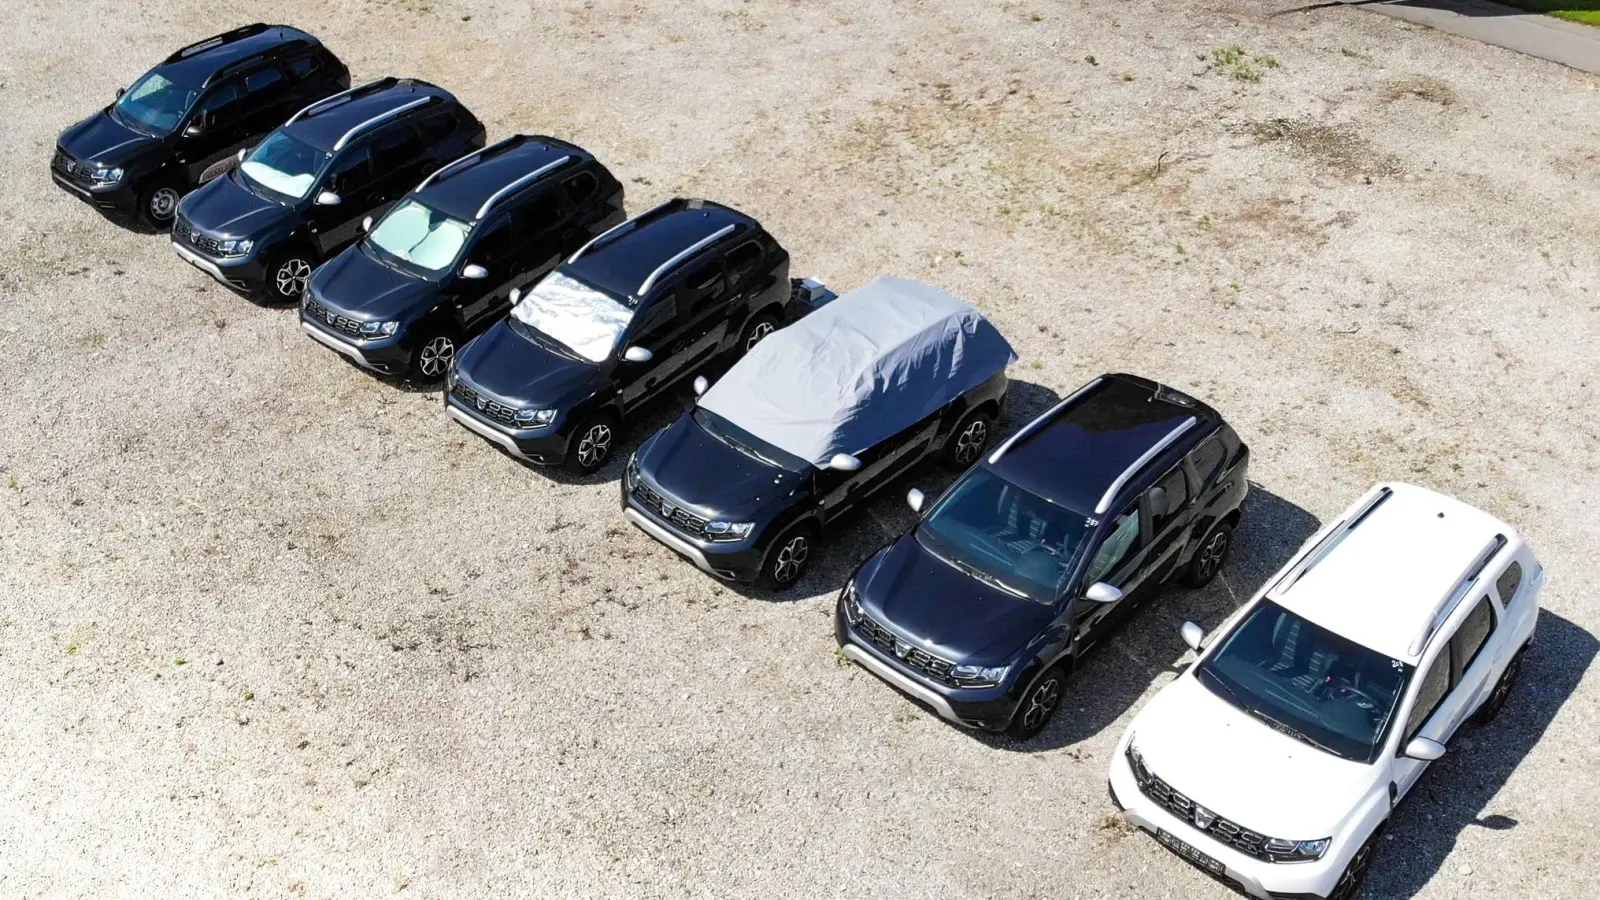 Der ADAC verglich sieben Fahrzeuge mit unterschiedlichen Sonnenschutzmaßnahmen. (Foto: ADAC/Test und Technik)